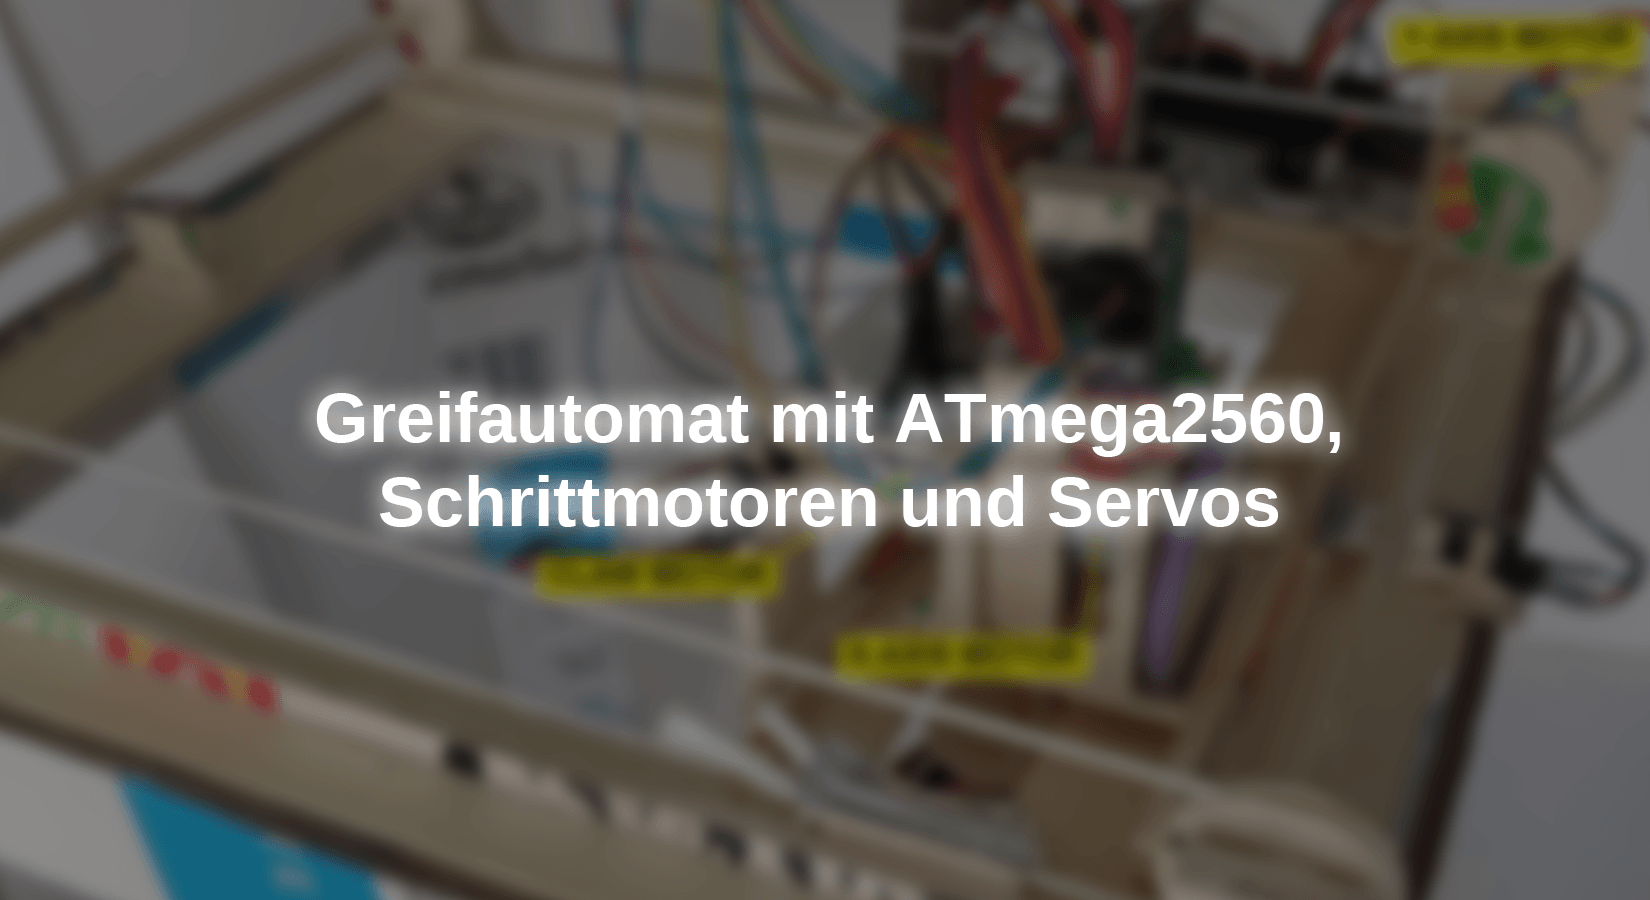 Greifautomat mit ATmega2560, Schrittmotoren und Servos - AZ-Delivery